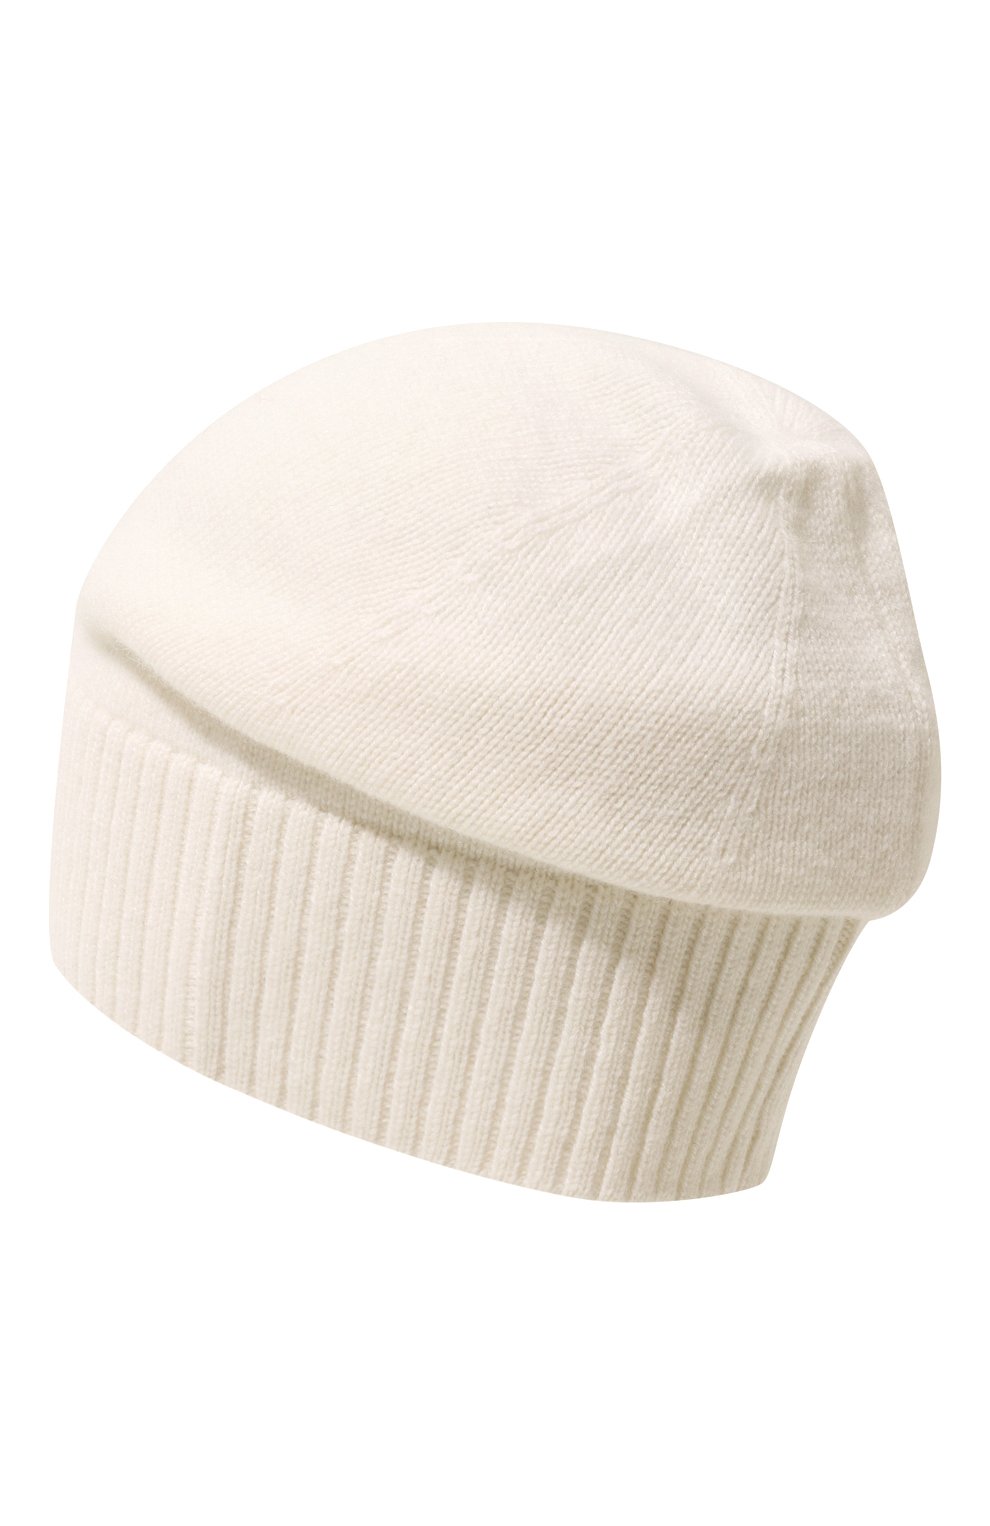 Женская кашемировая шапка lisbon CANOE молочного цвета, арт. 4912400 | Фото 3 (Материал: Текстиль, Кашемир, Шерсть)